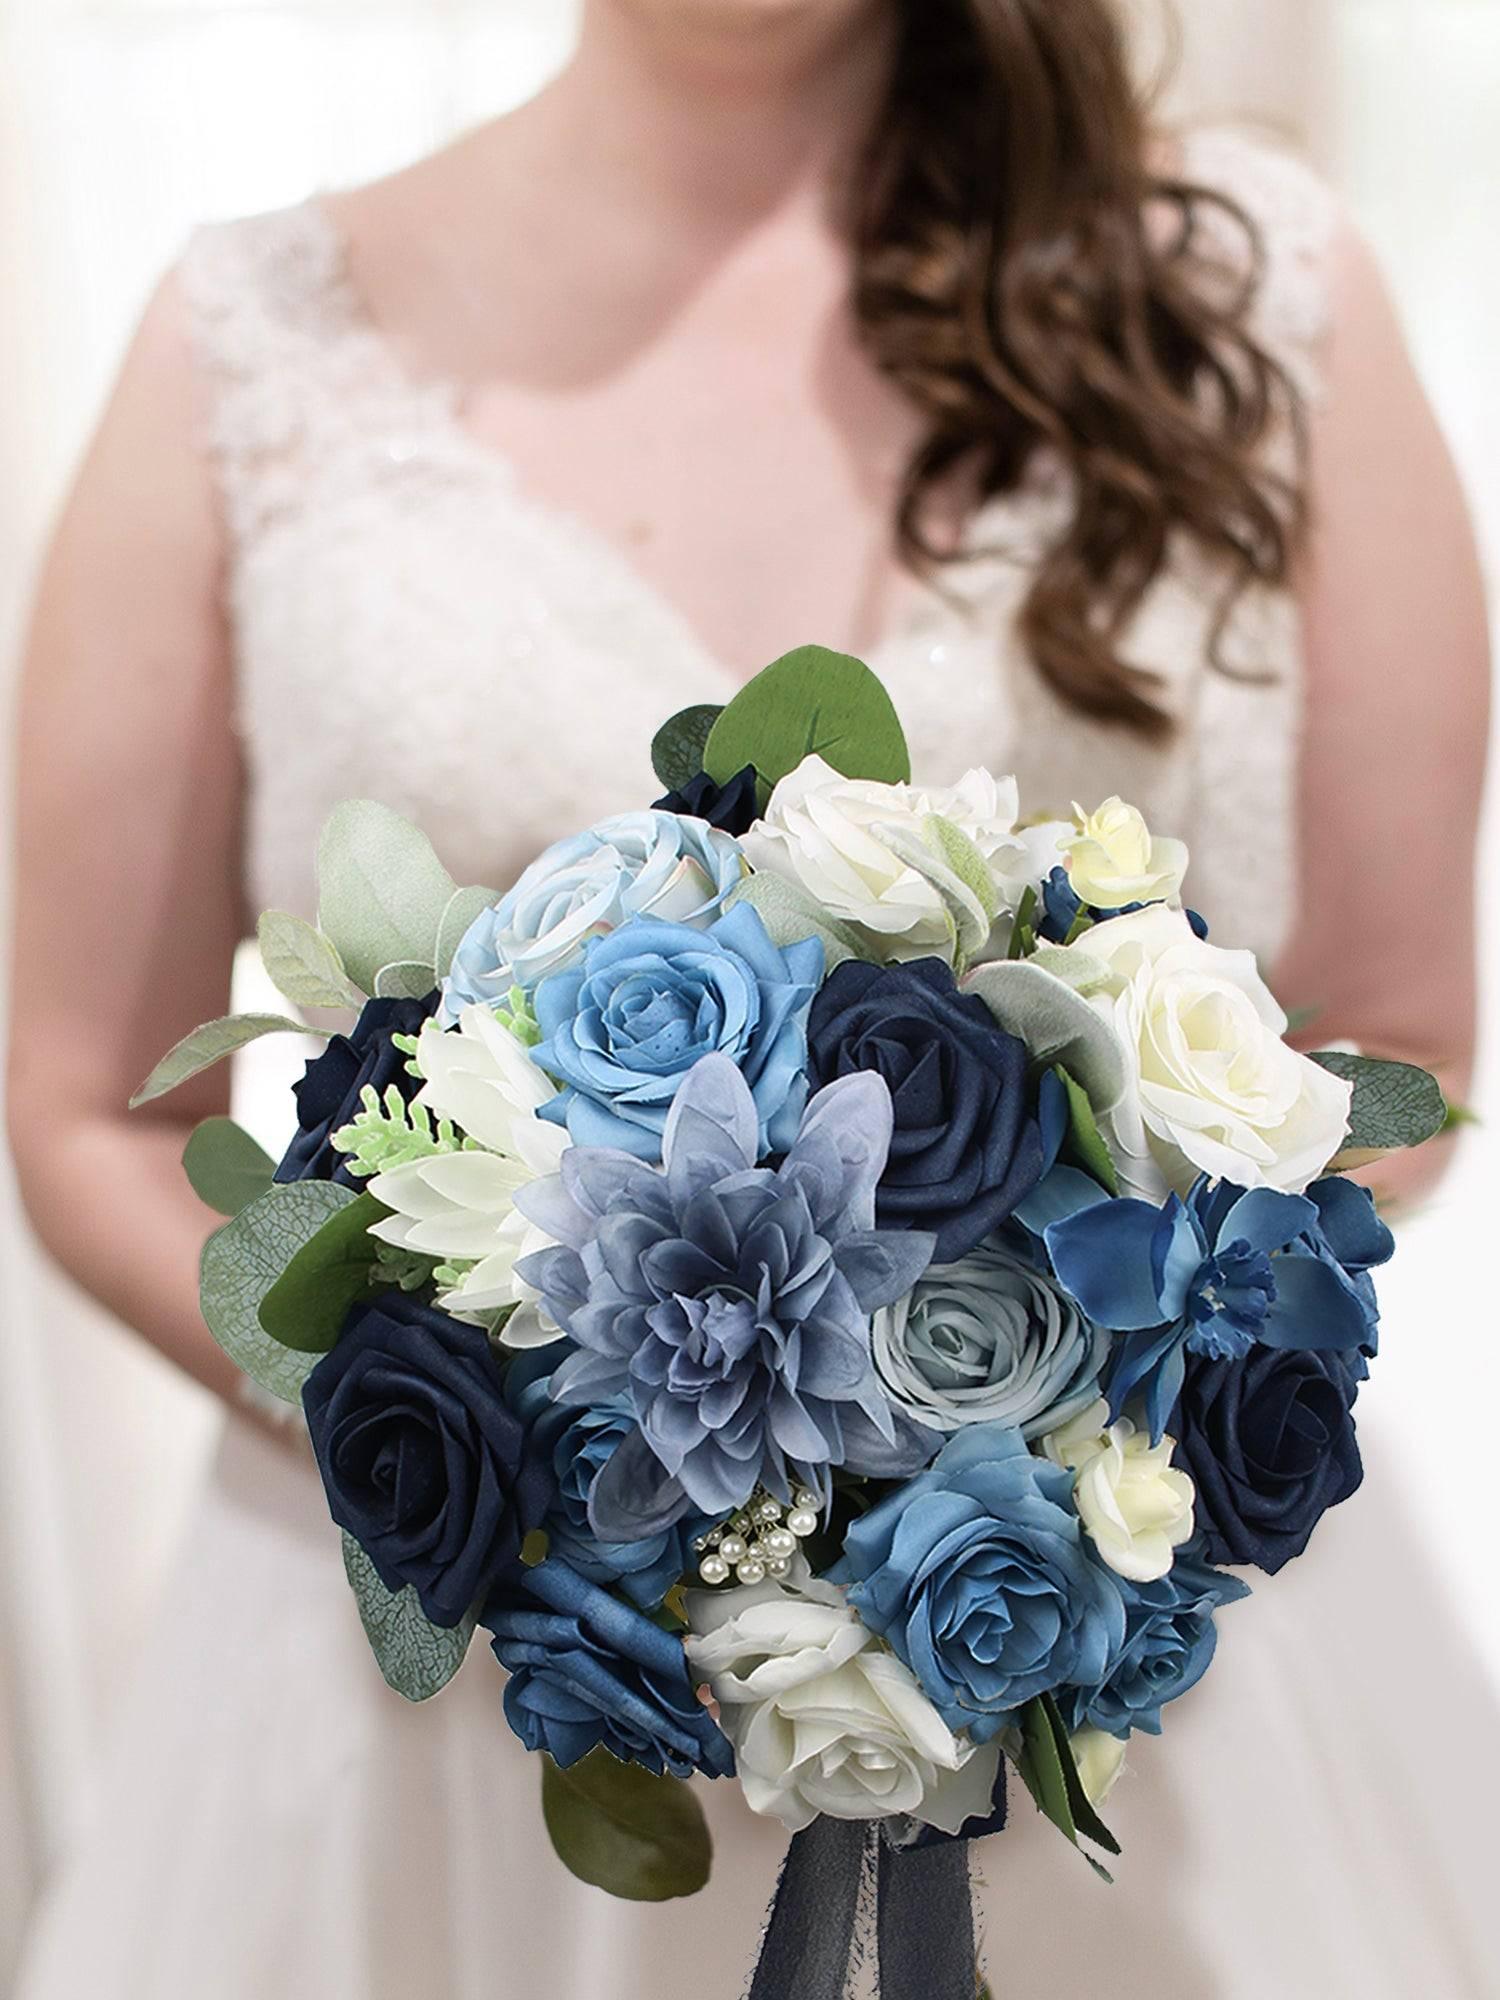 10.6 inch wide Round Navy Blue Bridal Bouquet - Rinlong Flower